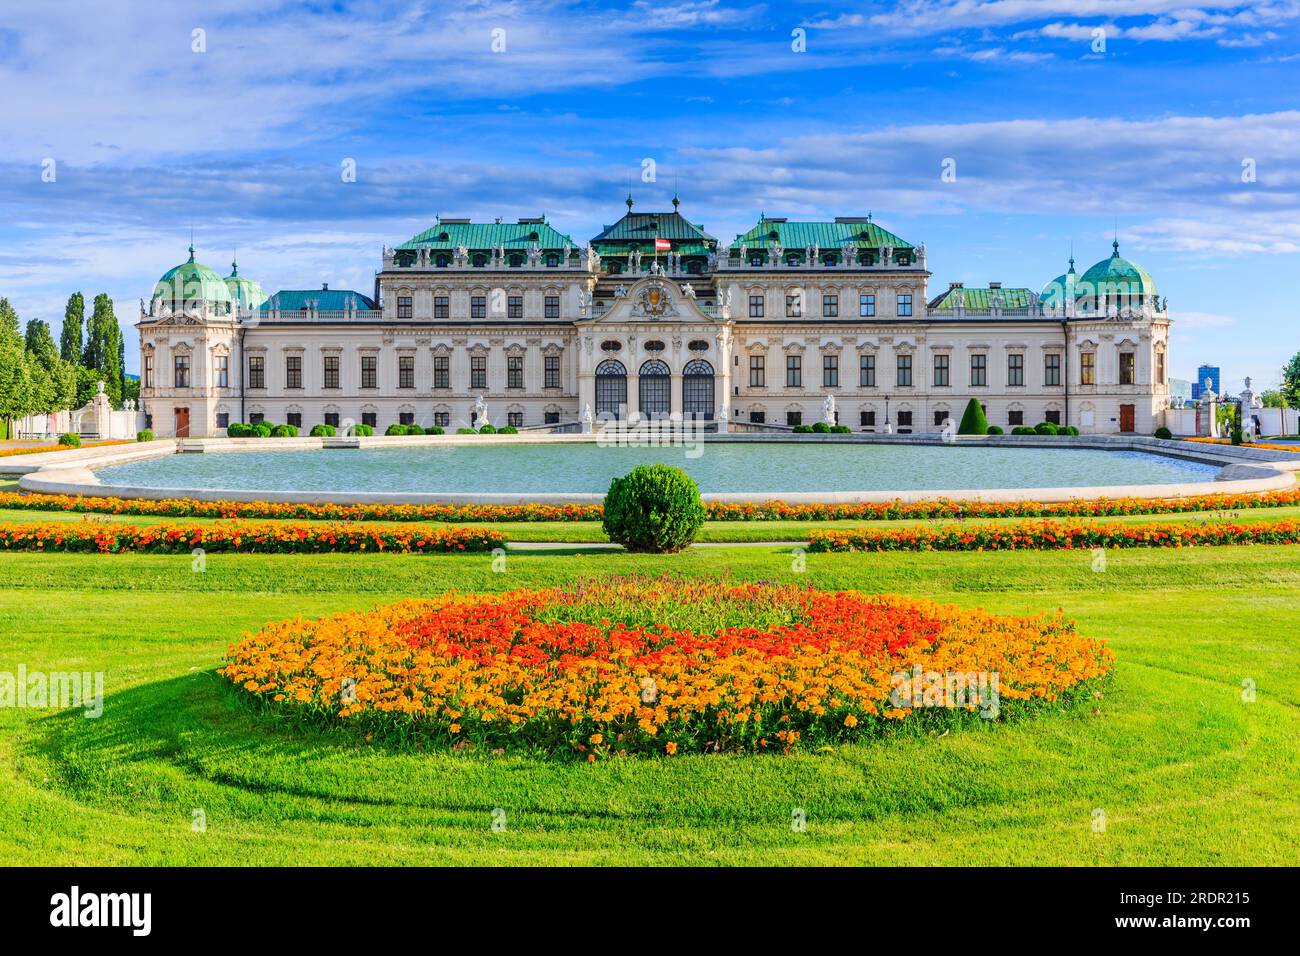 Vienna, Austria. Upper Belvedere Palace and garden. Stock Photo